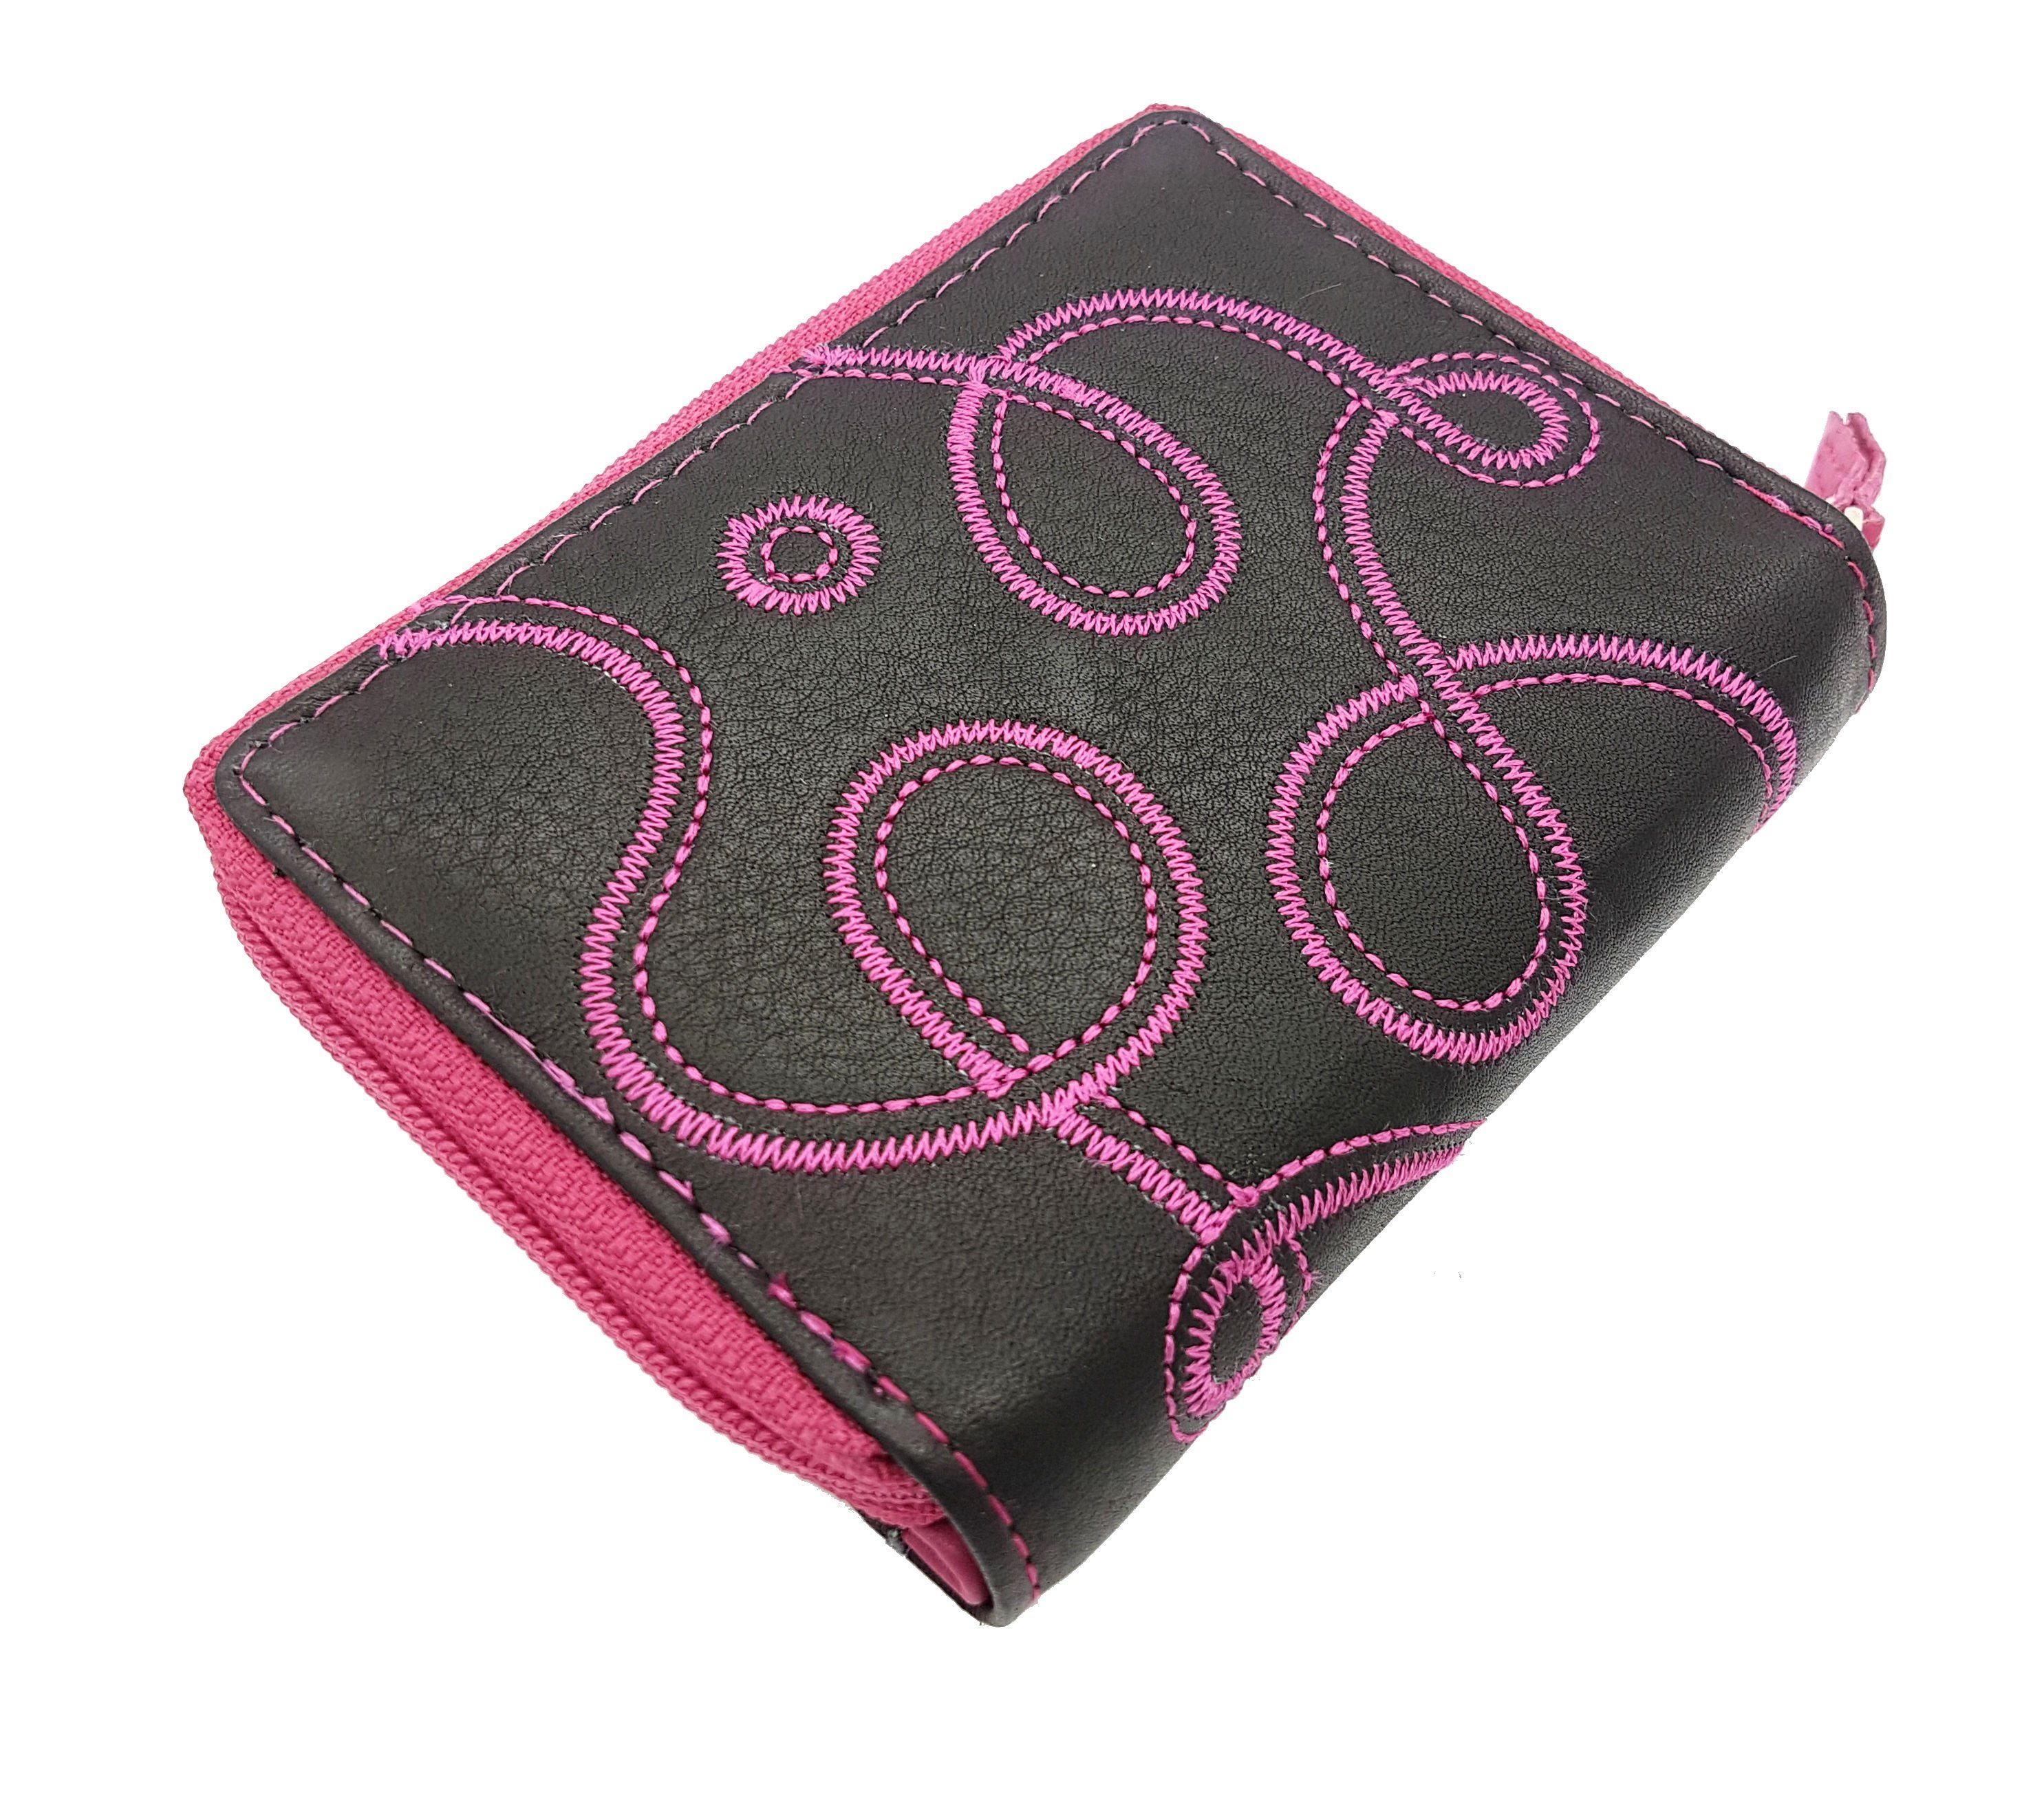 Damen JOCKEY Portemonnaie Mini mit mit kleines Schutz RFID "Loop", Reißverschlussmünzfach Leder CLUB Geldbörse echt Pink Stickerei,